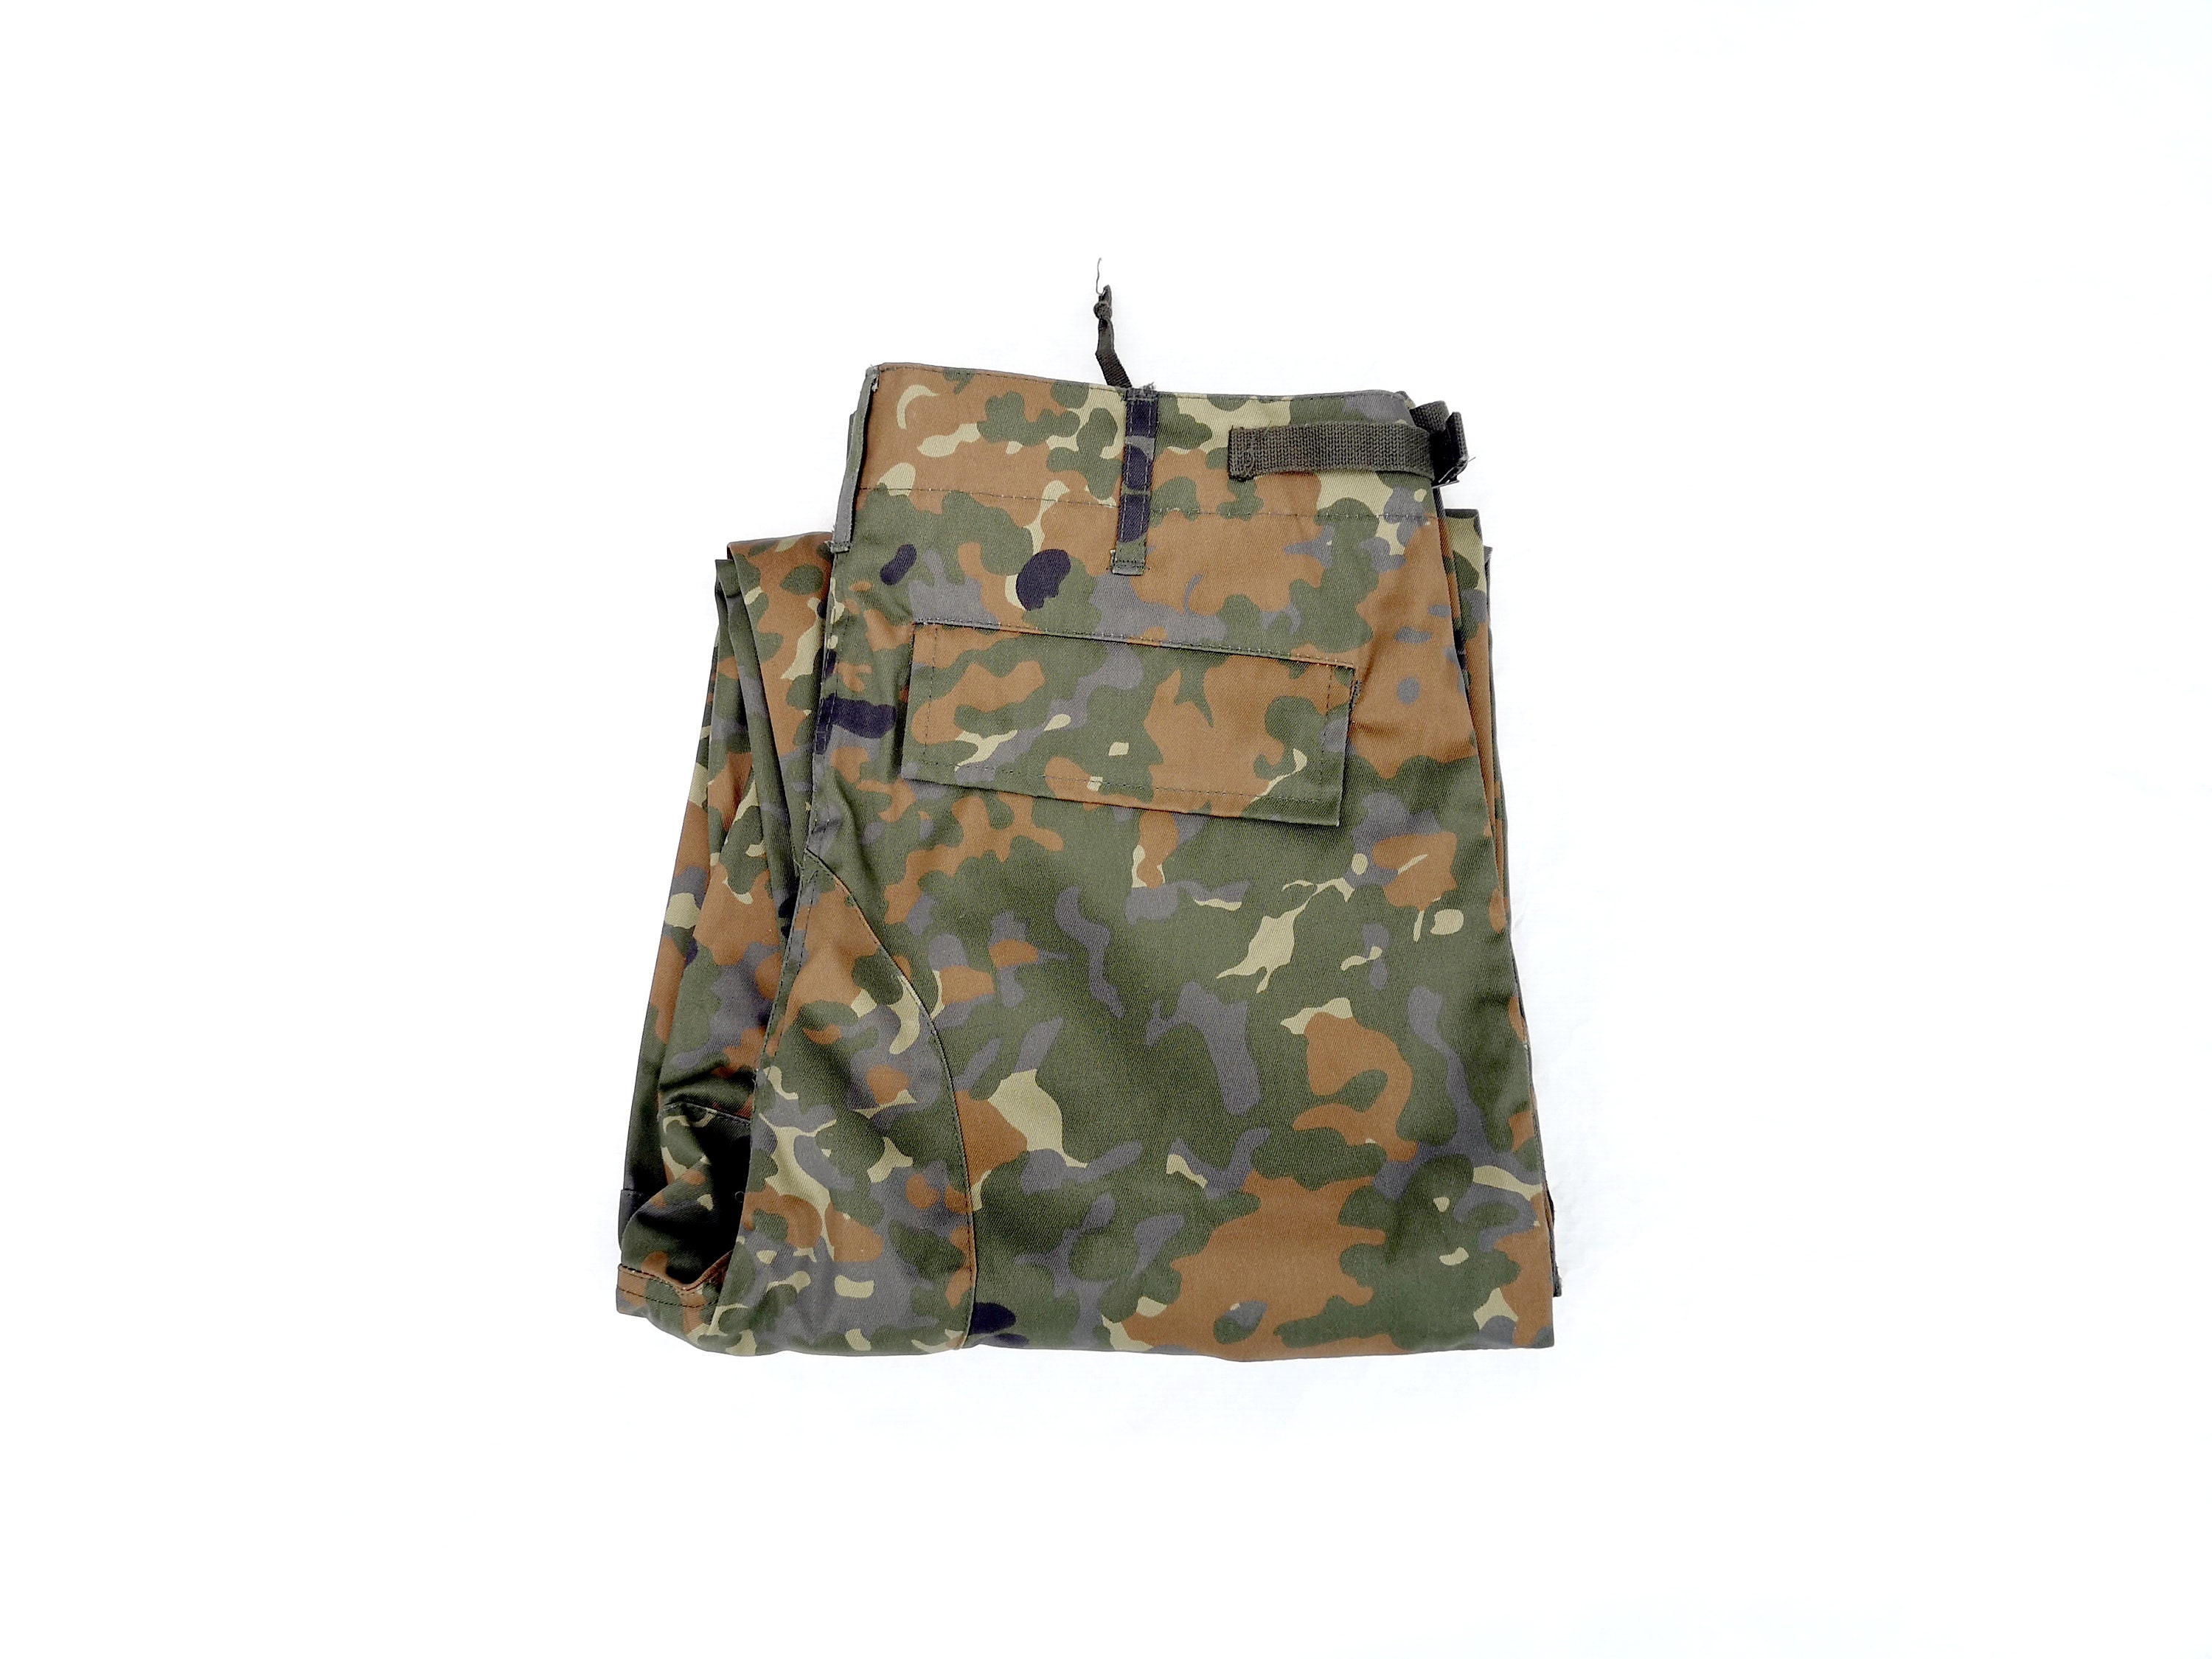 Importé - Pantalon Homme Sport Décontracté Style Camouflage Militaire En  Coton